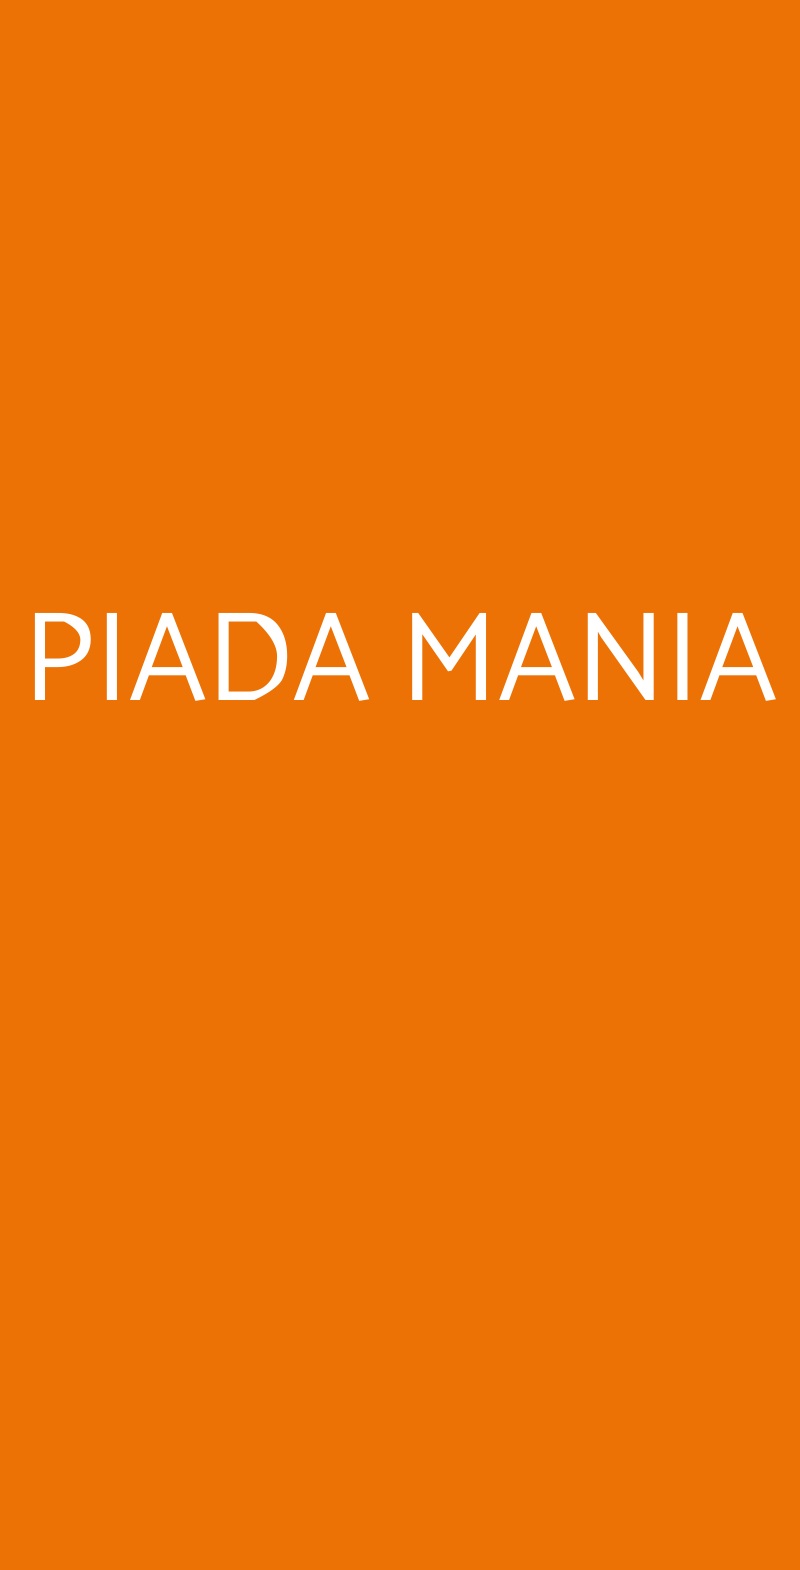 PIADA MANIA Modena menù 1 pagina